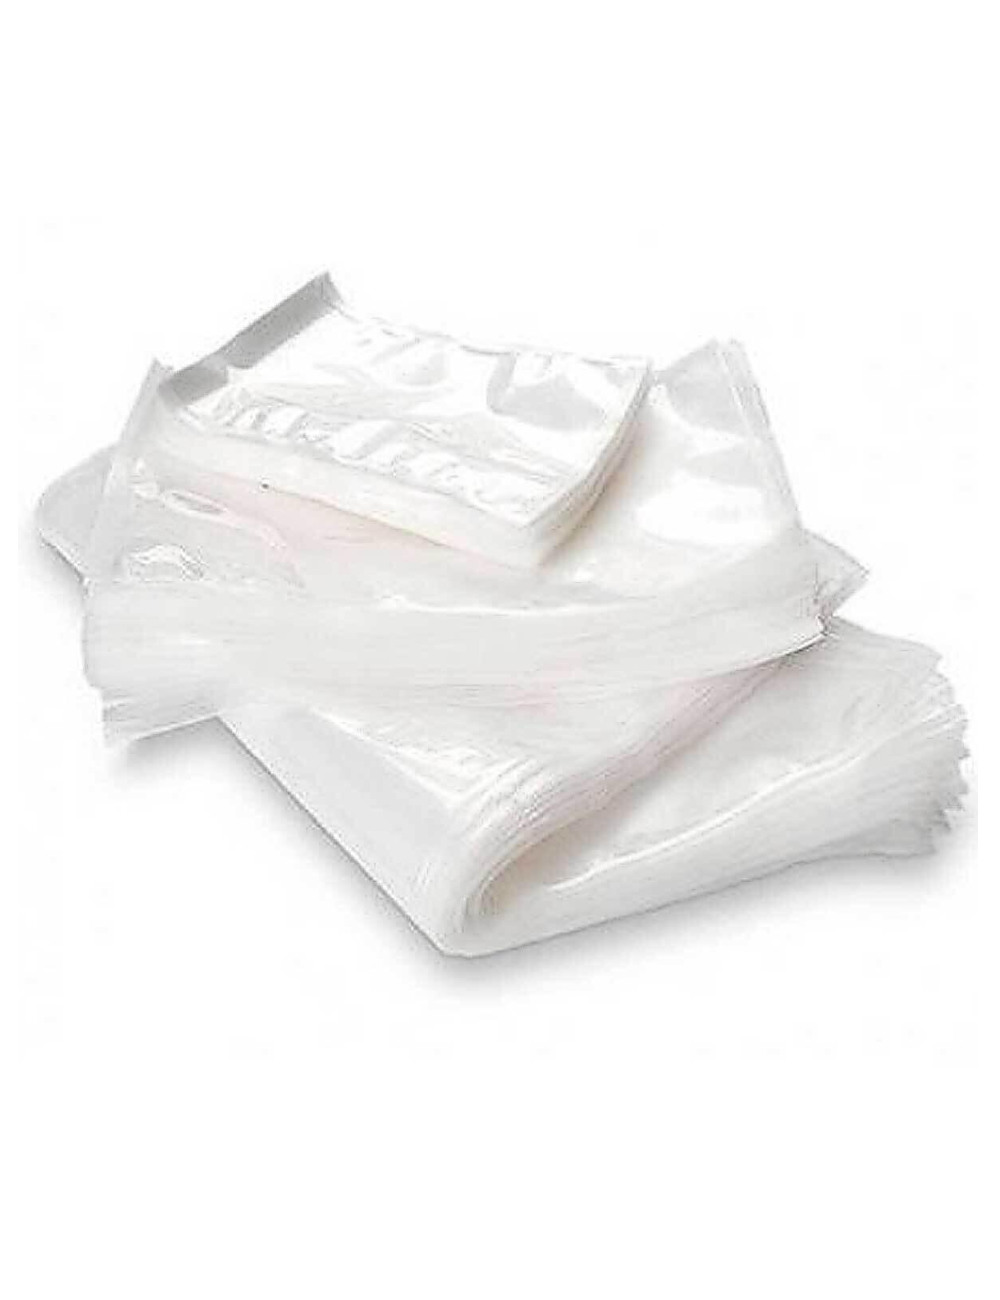 Bolsas de vacío transparentes 12X60 de 90 micras (100u) - Papeles Salvi